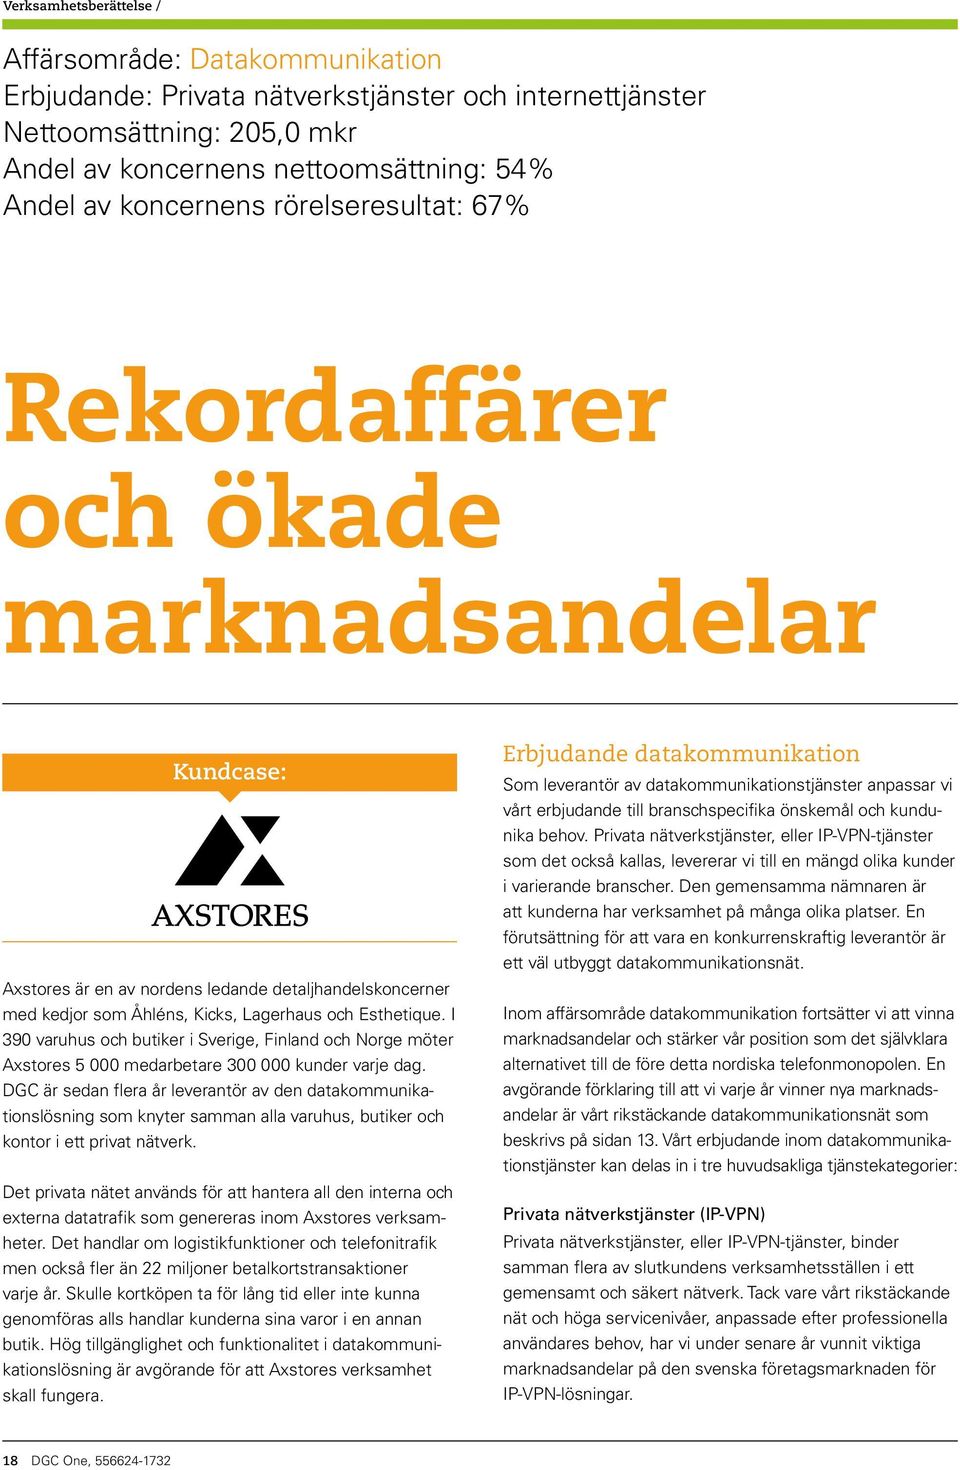 I 390 varuhus och butiker i Sverige, Finland och Norge möter Axstores 5 000 medarbetare 300 000 kunder varje dag.